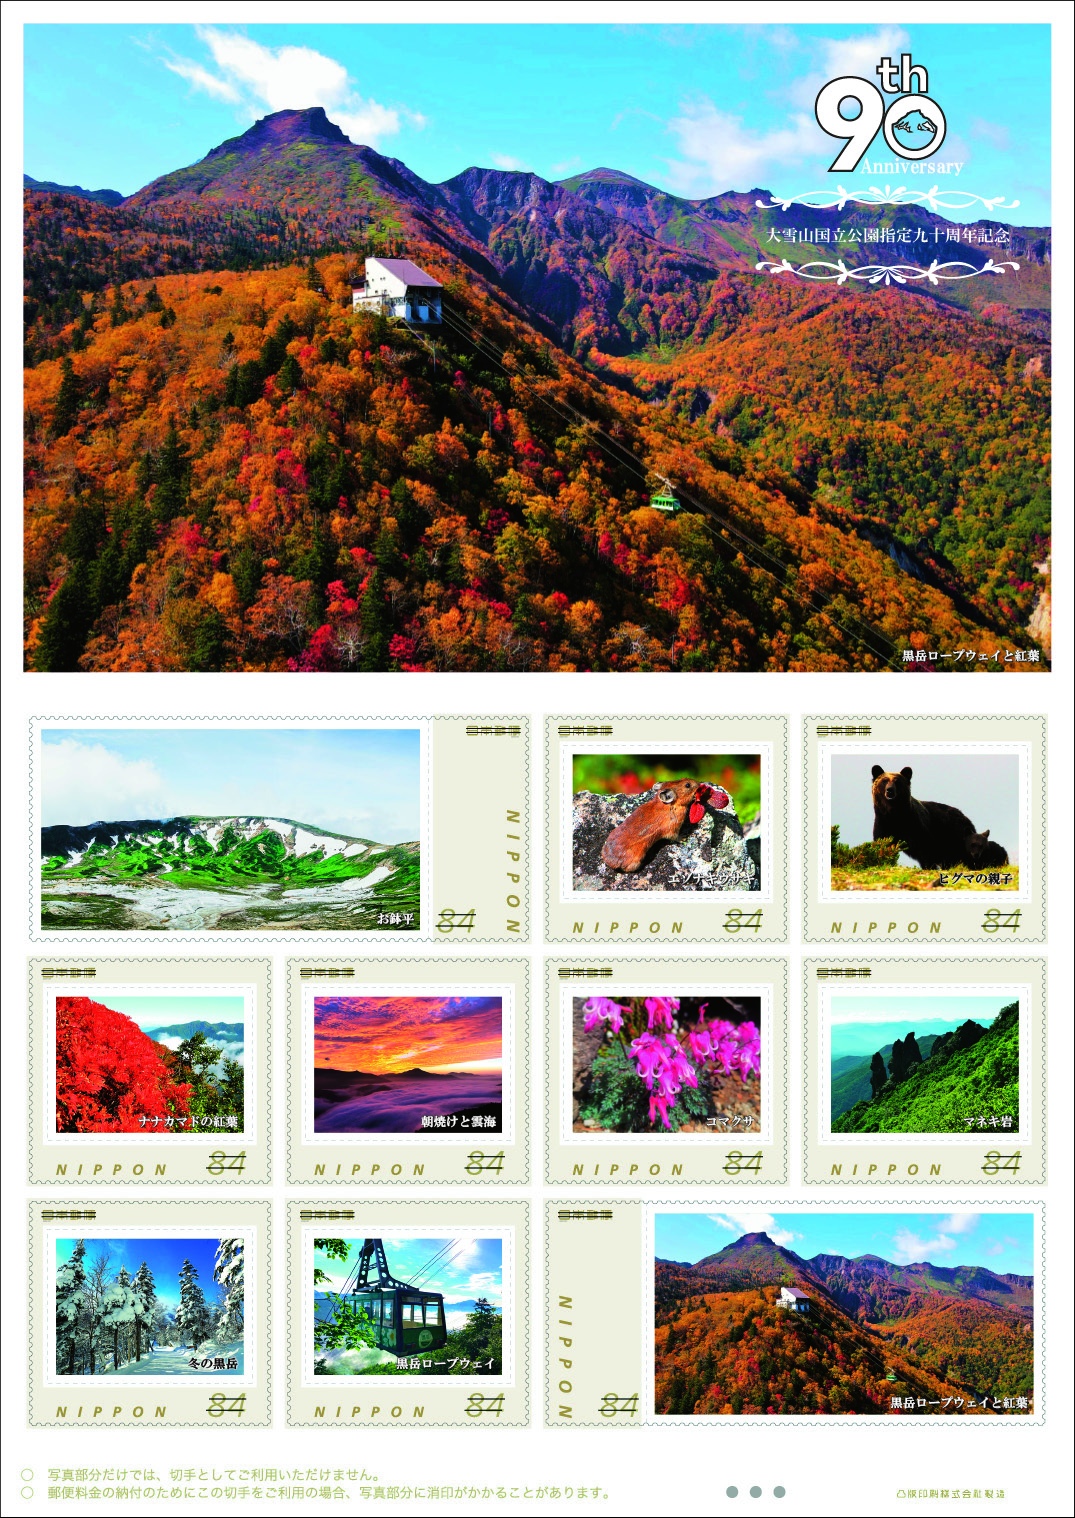 オリジナル フレーム切手「大雪山国立公園指定九十周年記念」の販売開始